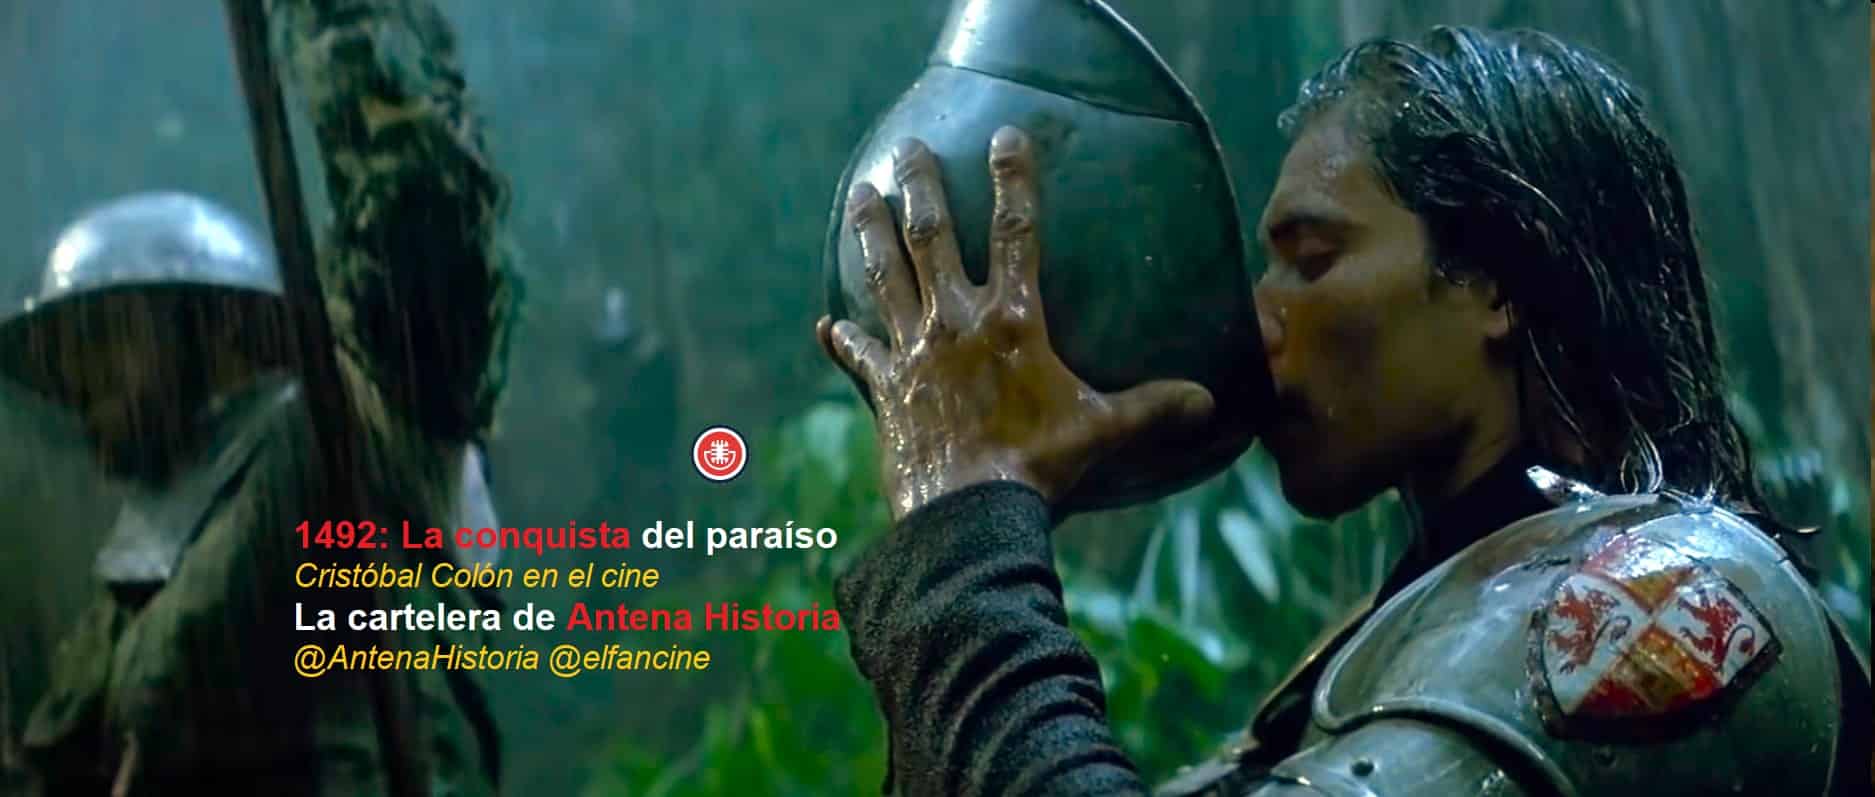 Descubrimiento de América en el cine - Bandera capitana - EXPO92 - el fancine - Antena Historia - Día de la Hispanidad - Matalascañas